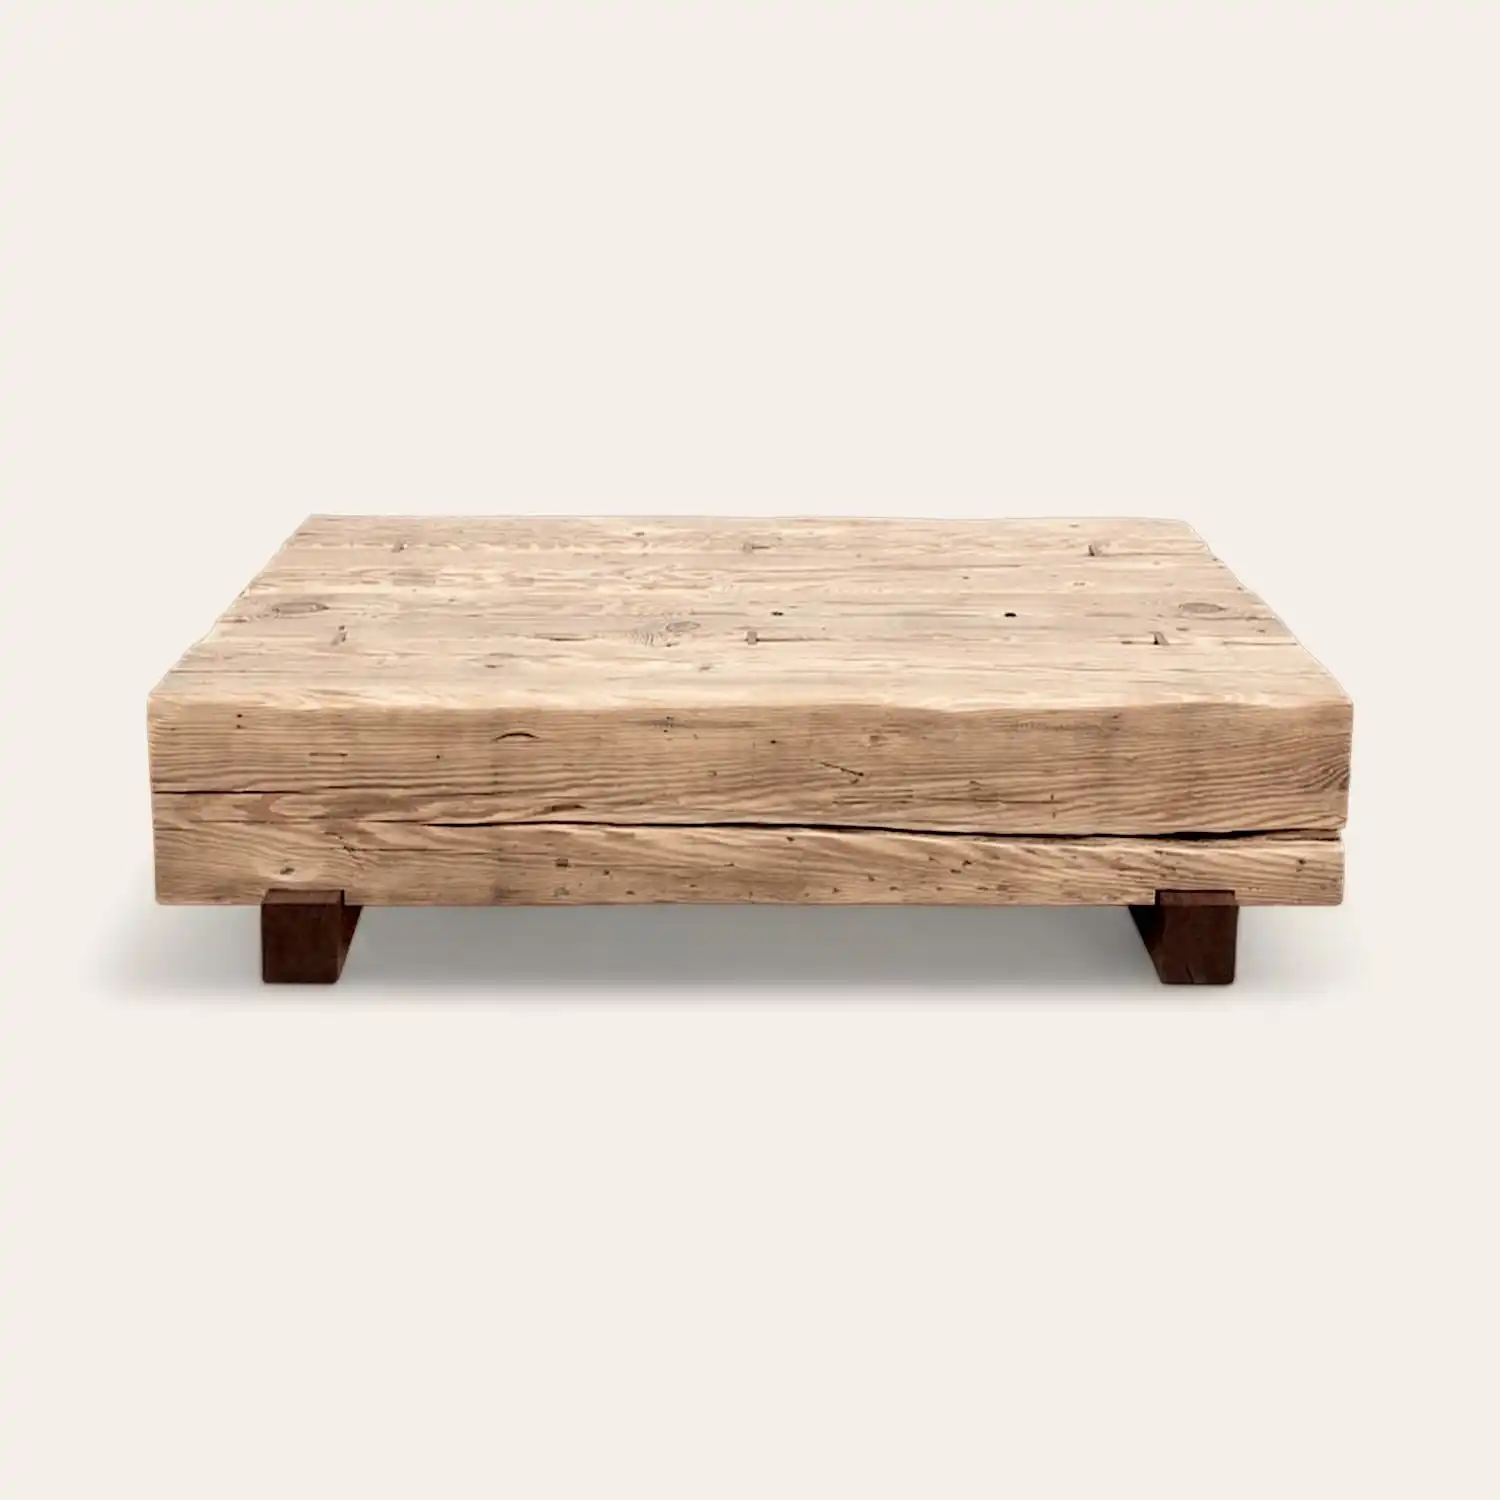  Une table rustique carrée en bois avec pieds. 